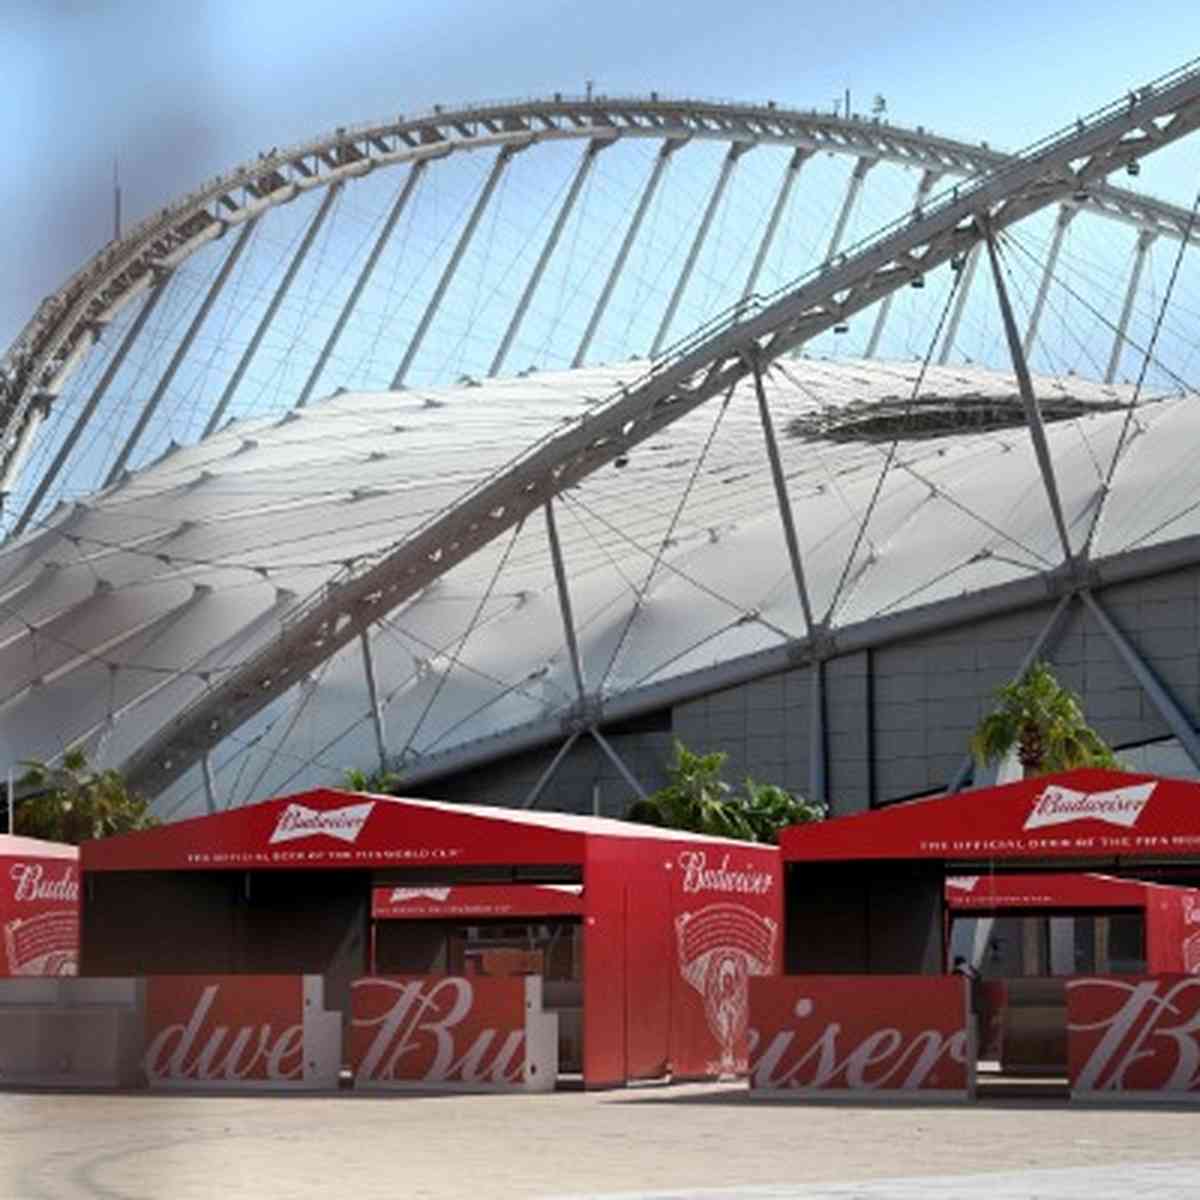 Mundial de Clubes da Fifa começará em 11 de dezembro no Catar